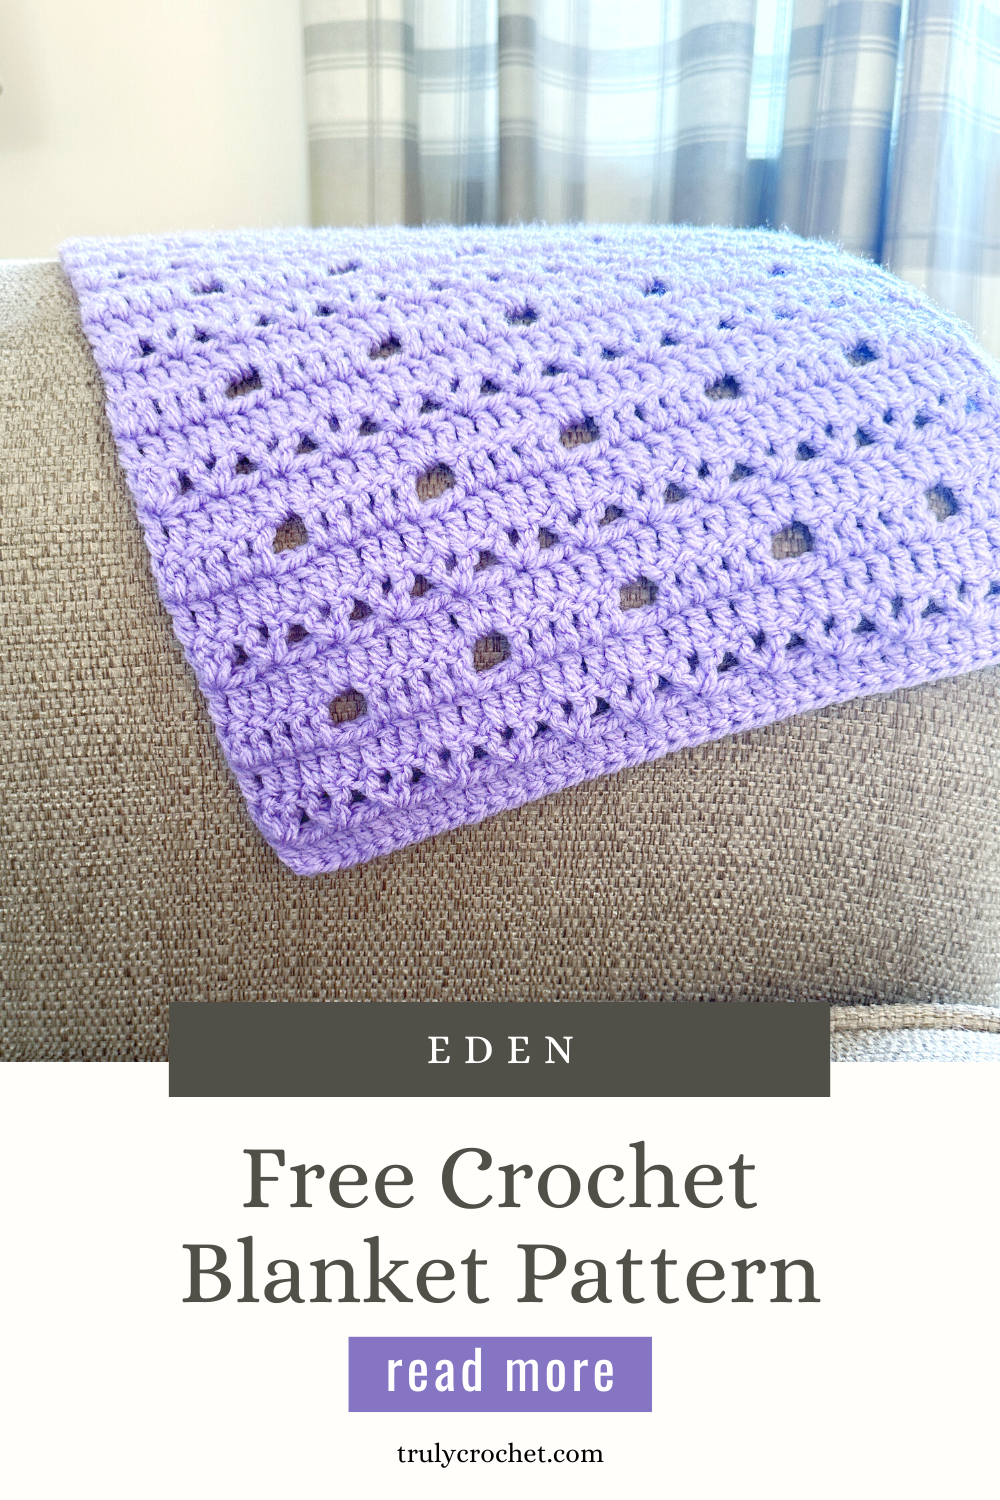 Eden Blanket - Free Crochet Pattern